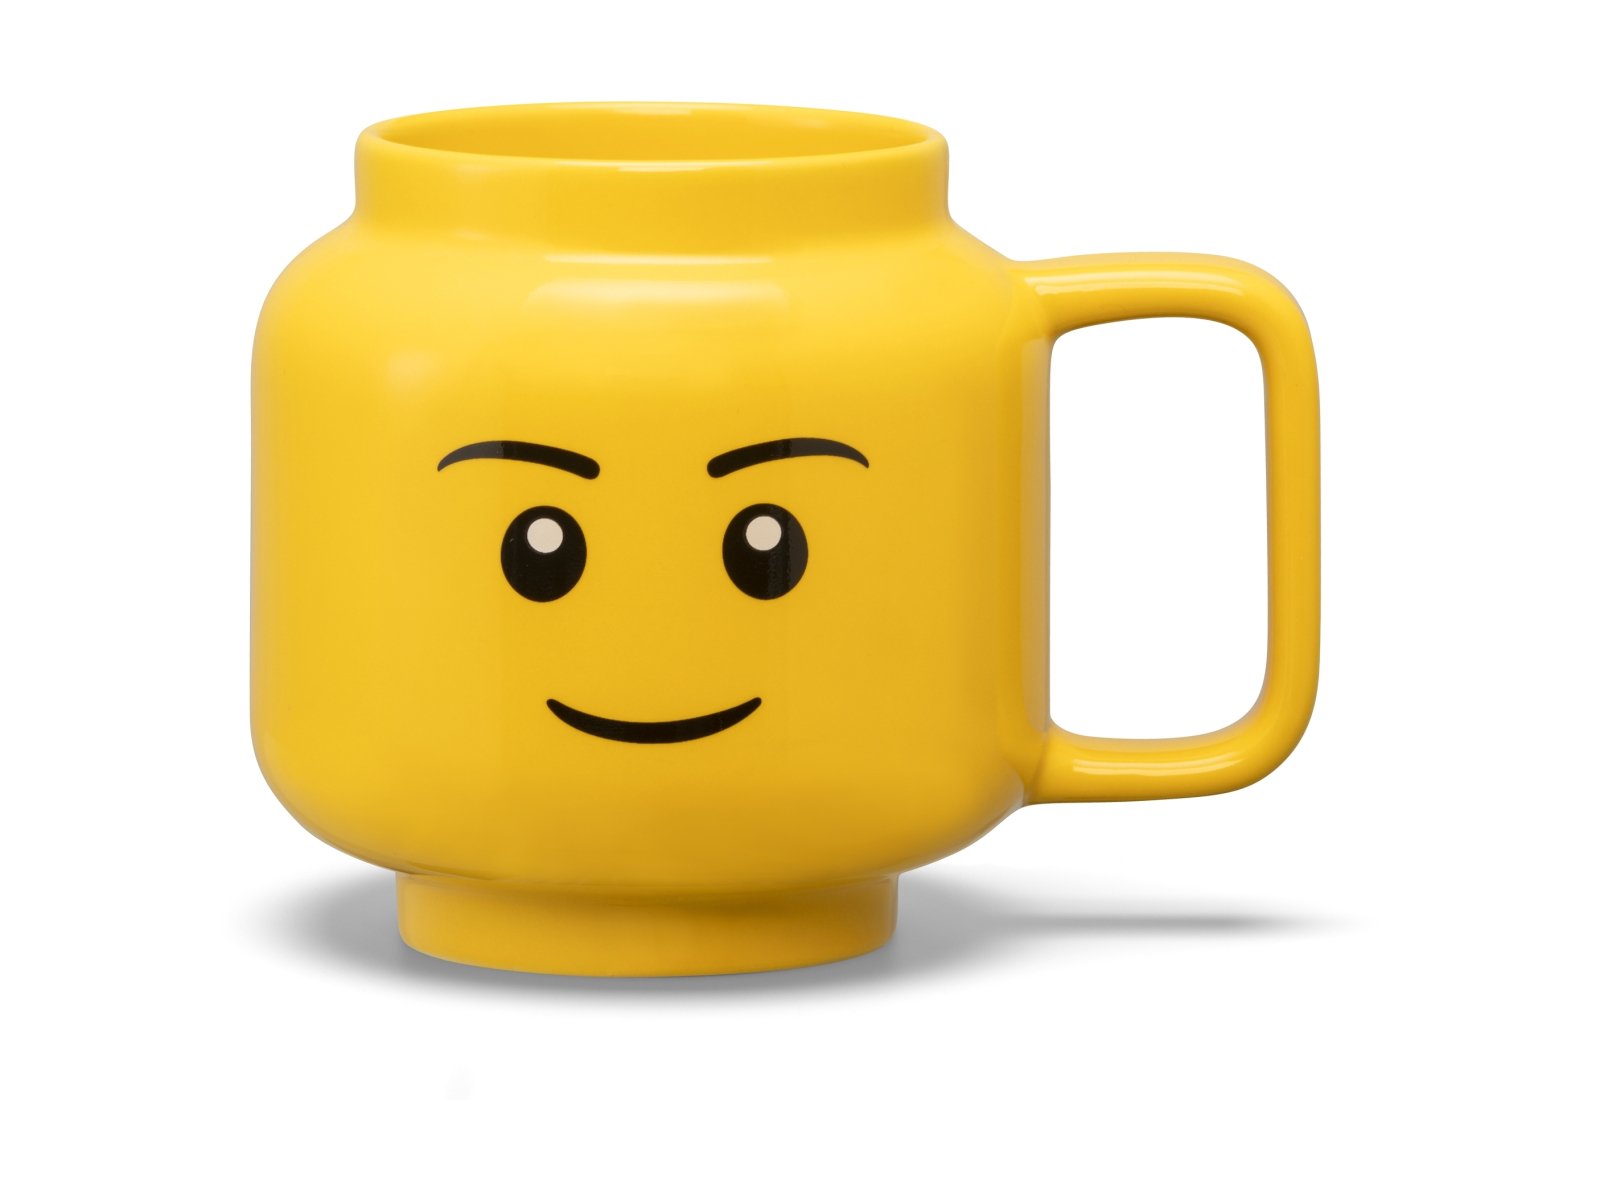 LEGO 5007875 Duży ceramiczny kubek z chłopcem